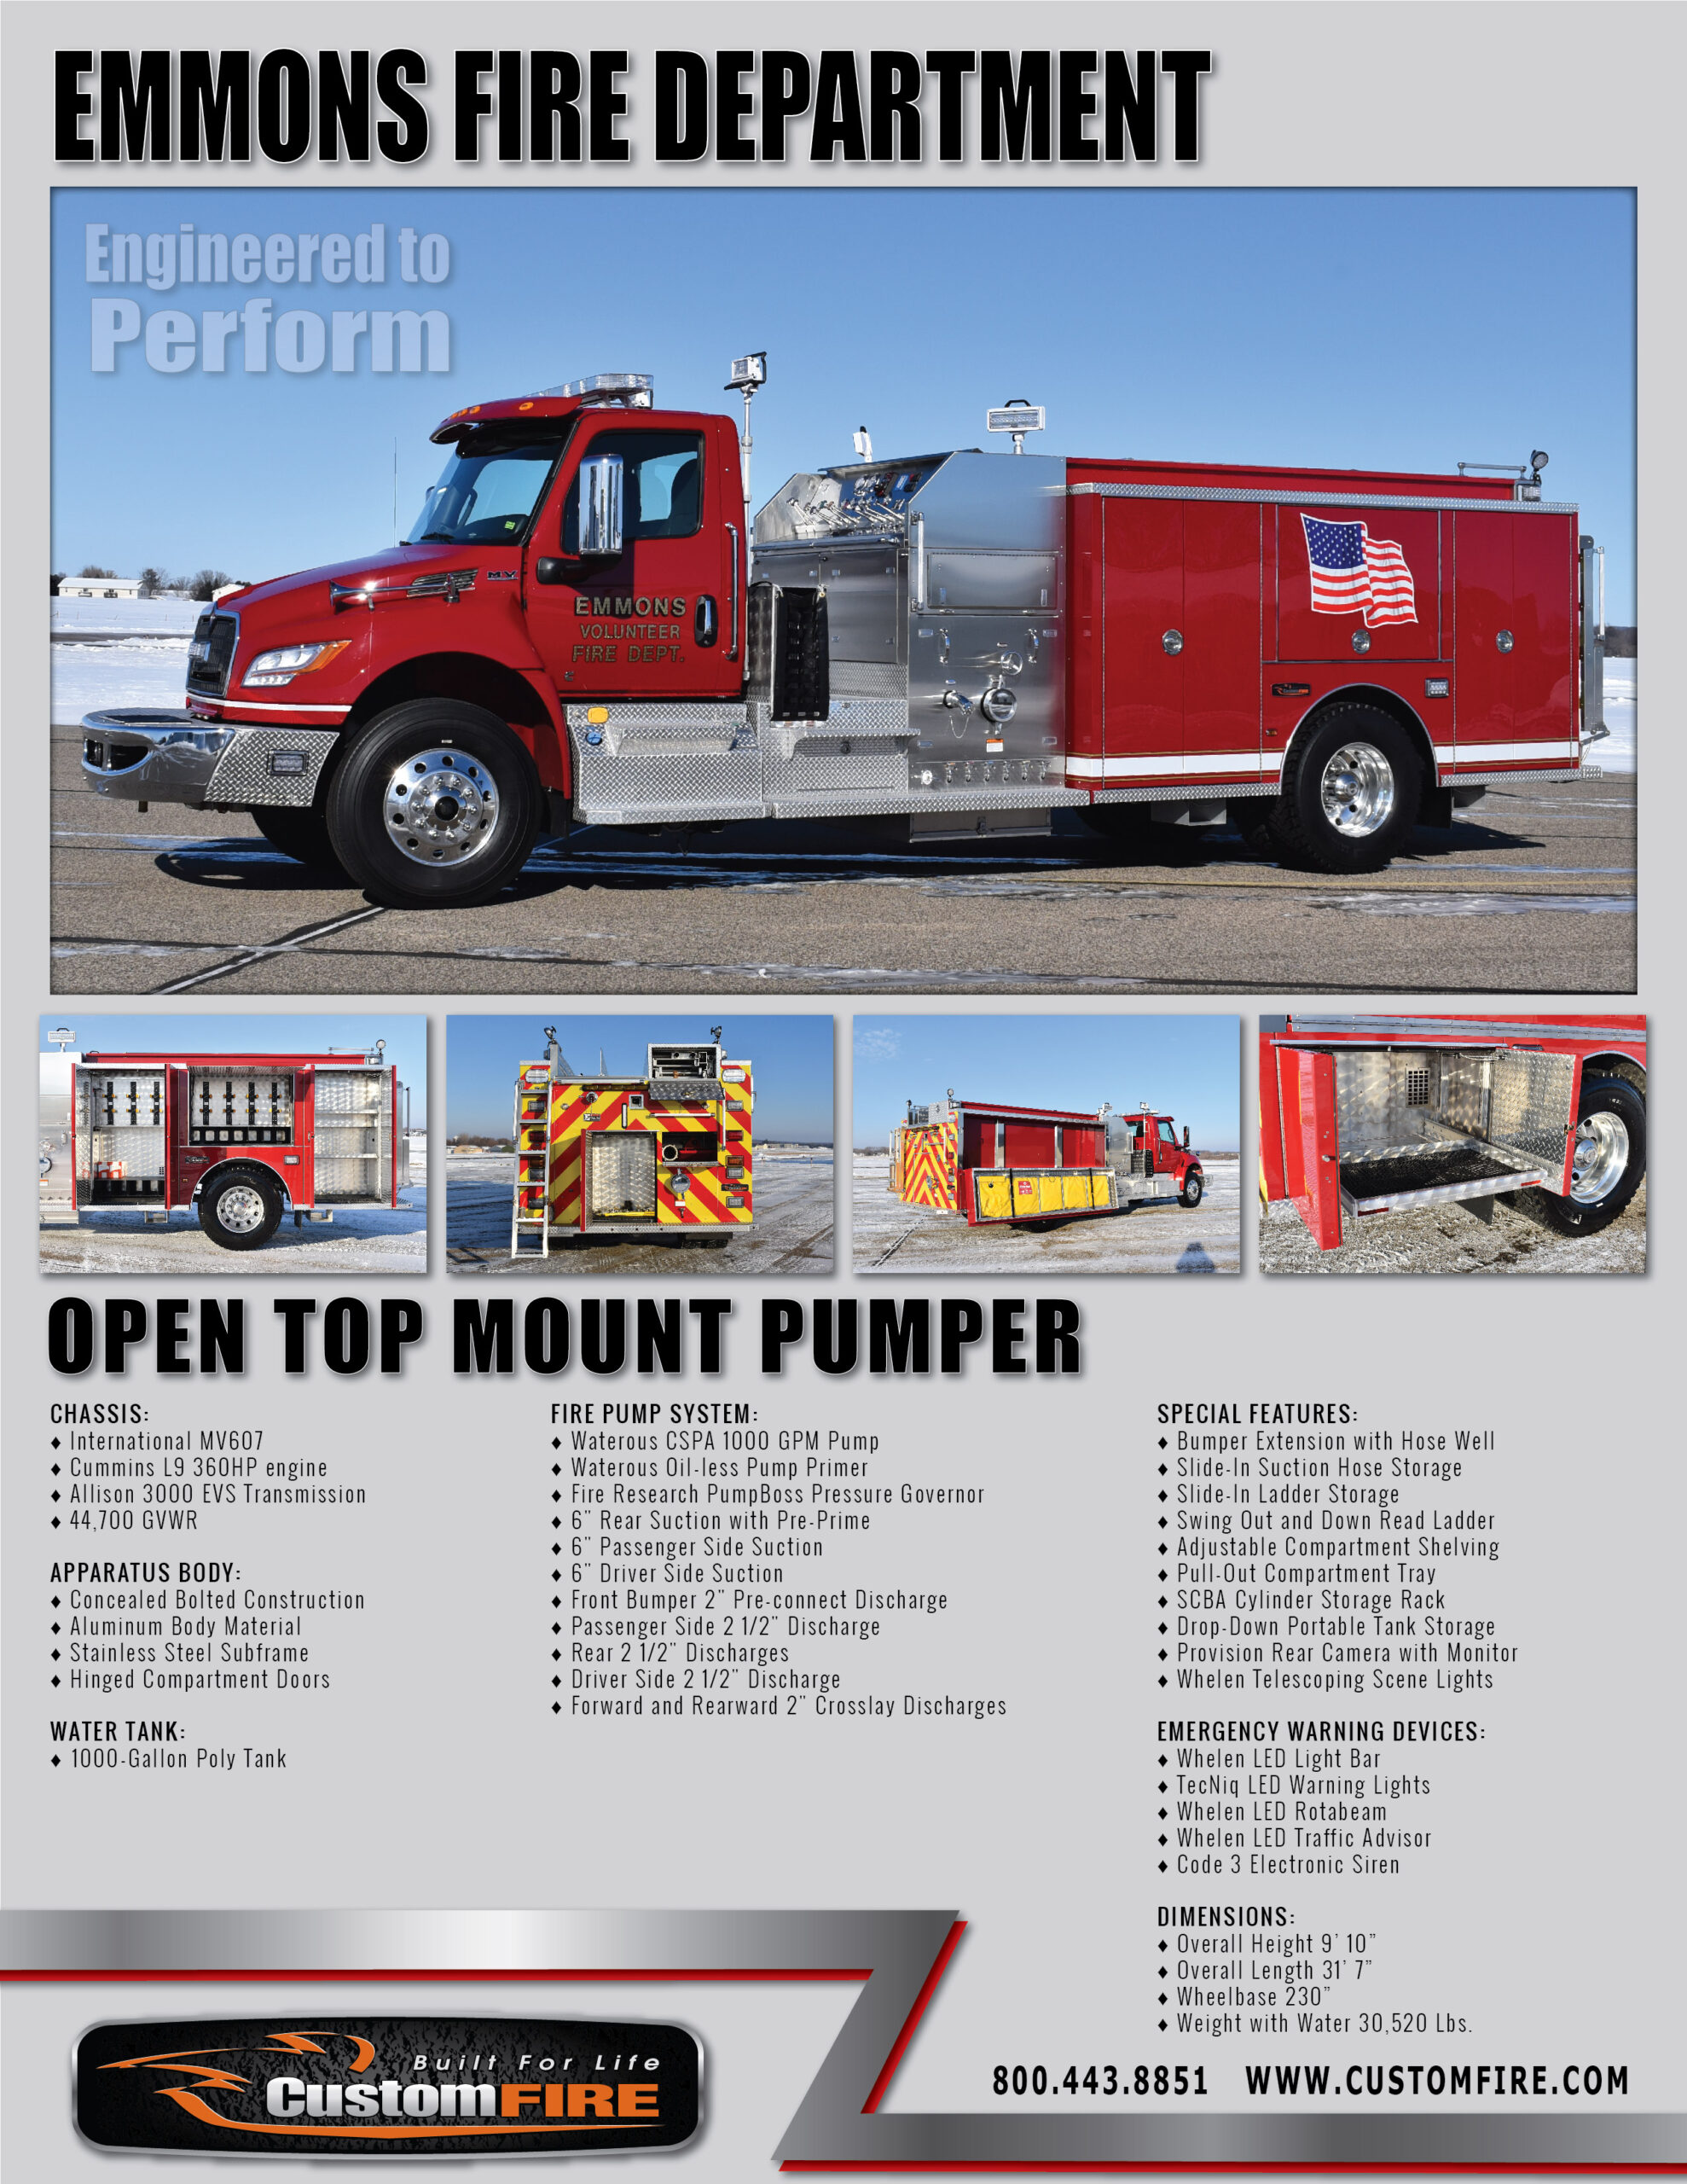 Open top mount pumper vital stats